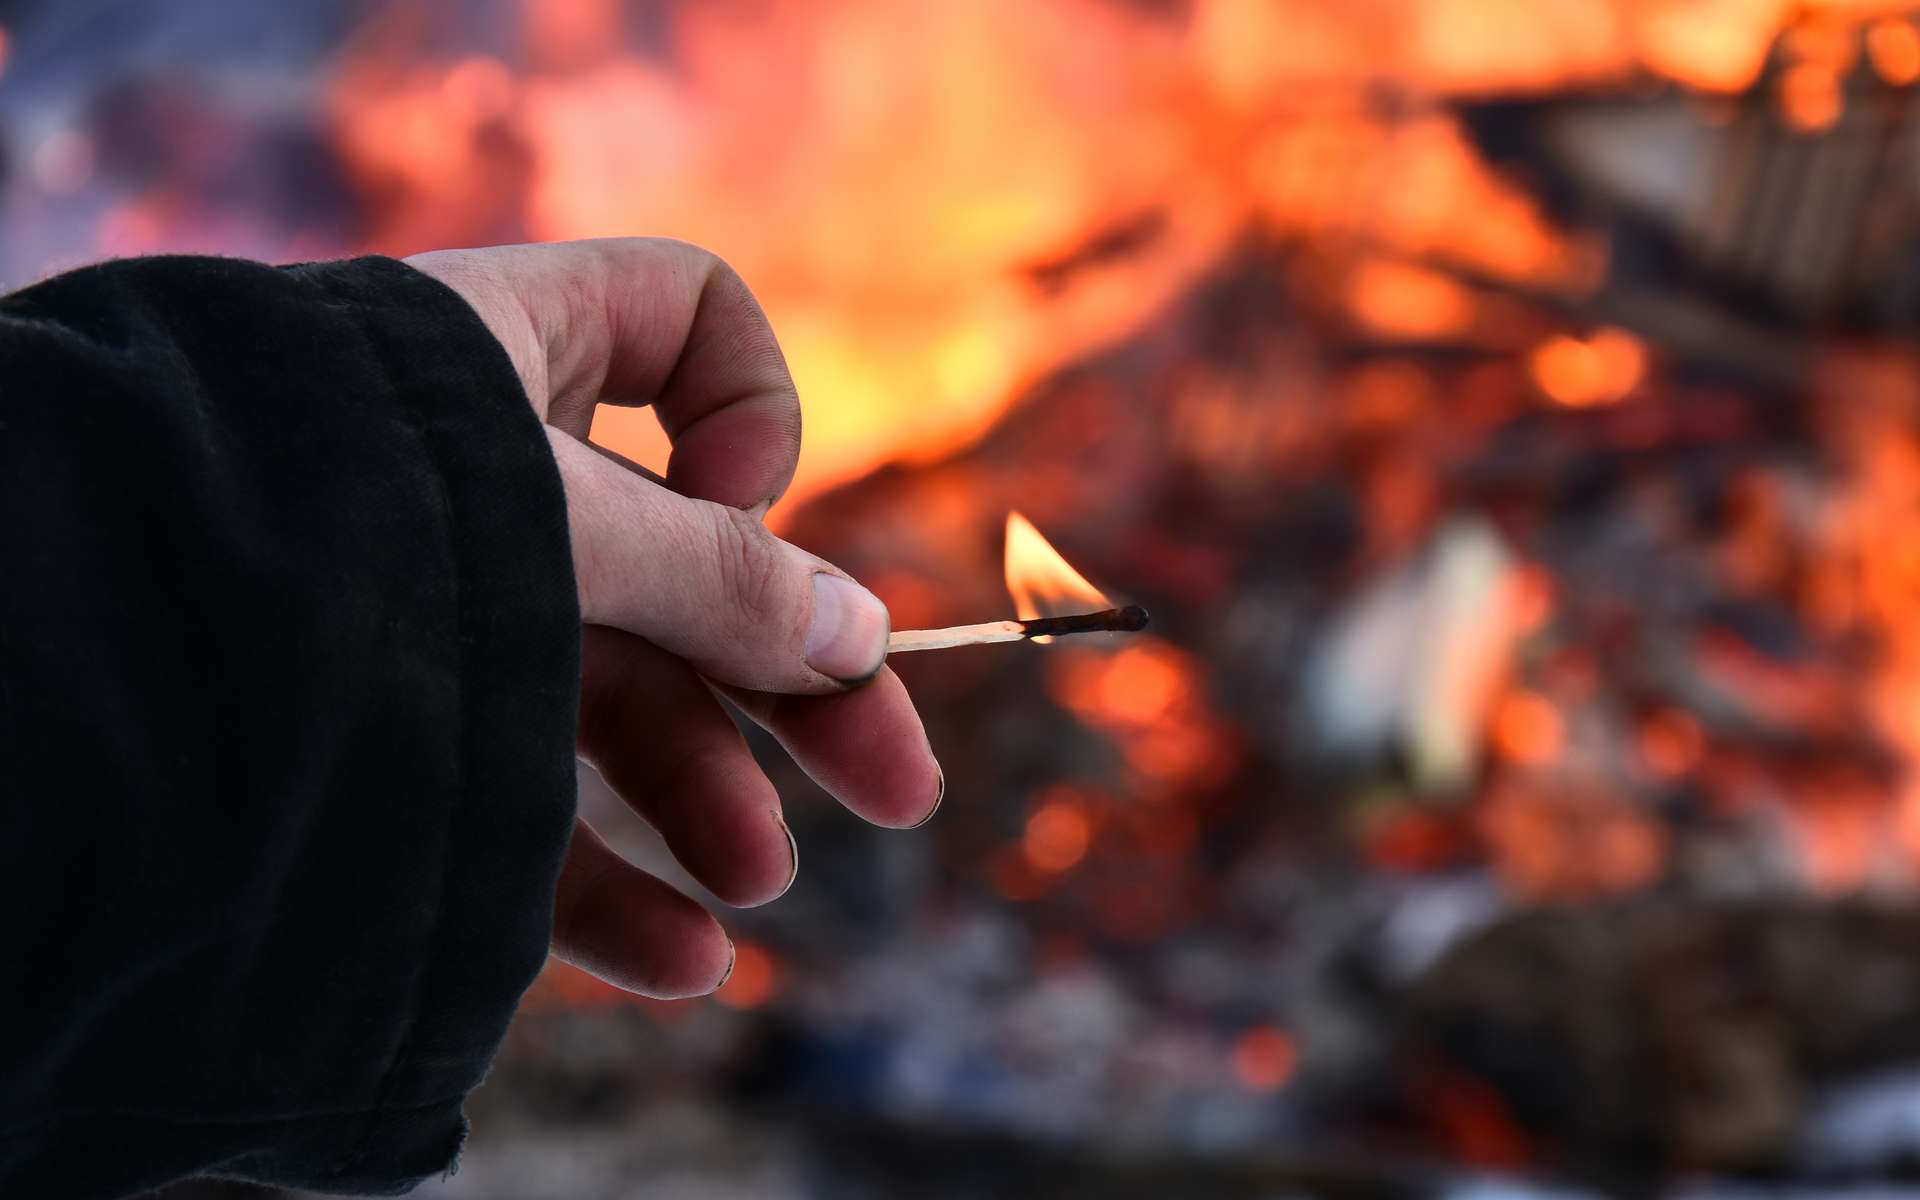 Incendies : l'archétype du pyromane existe-t-il vraiment ?